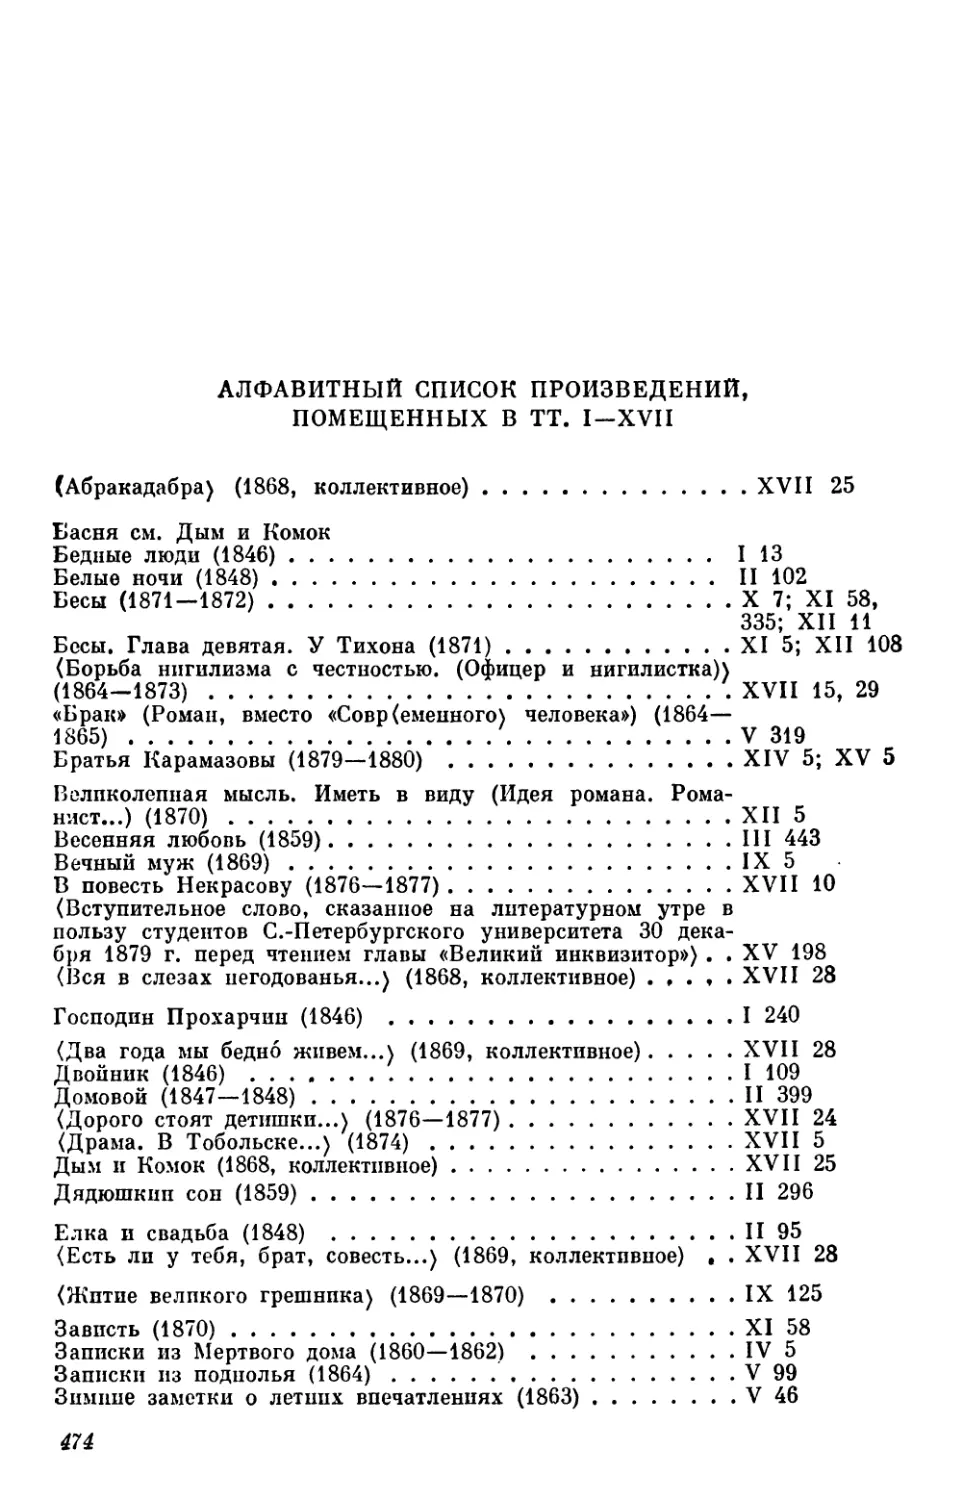 Алфавитный список произведений, помещенных в тт. I—XVII